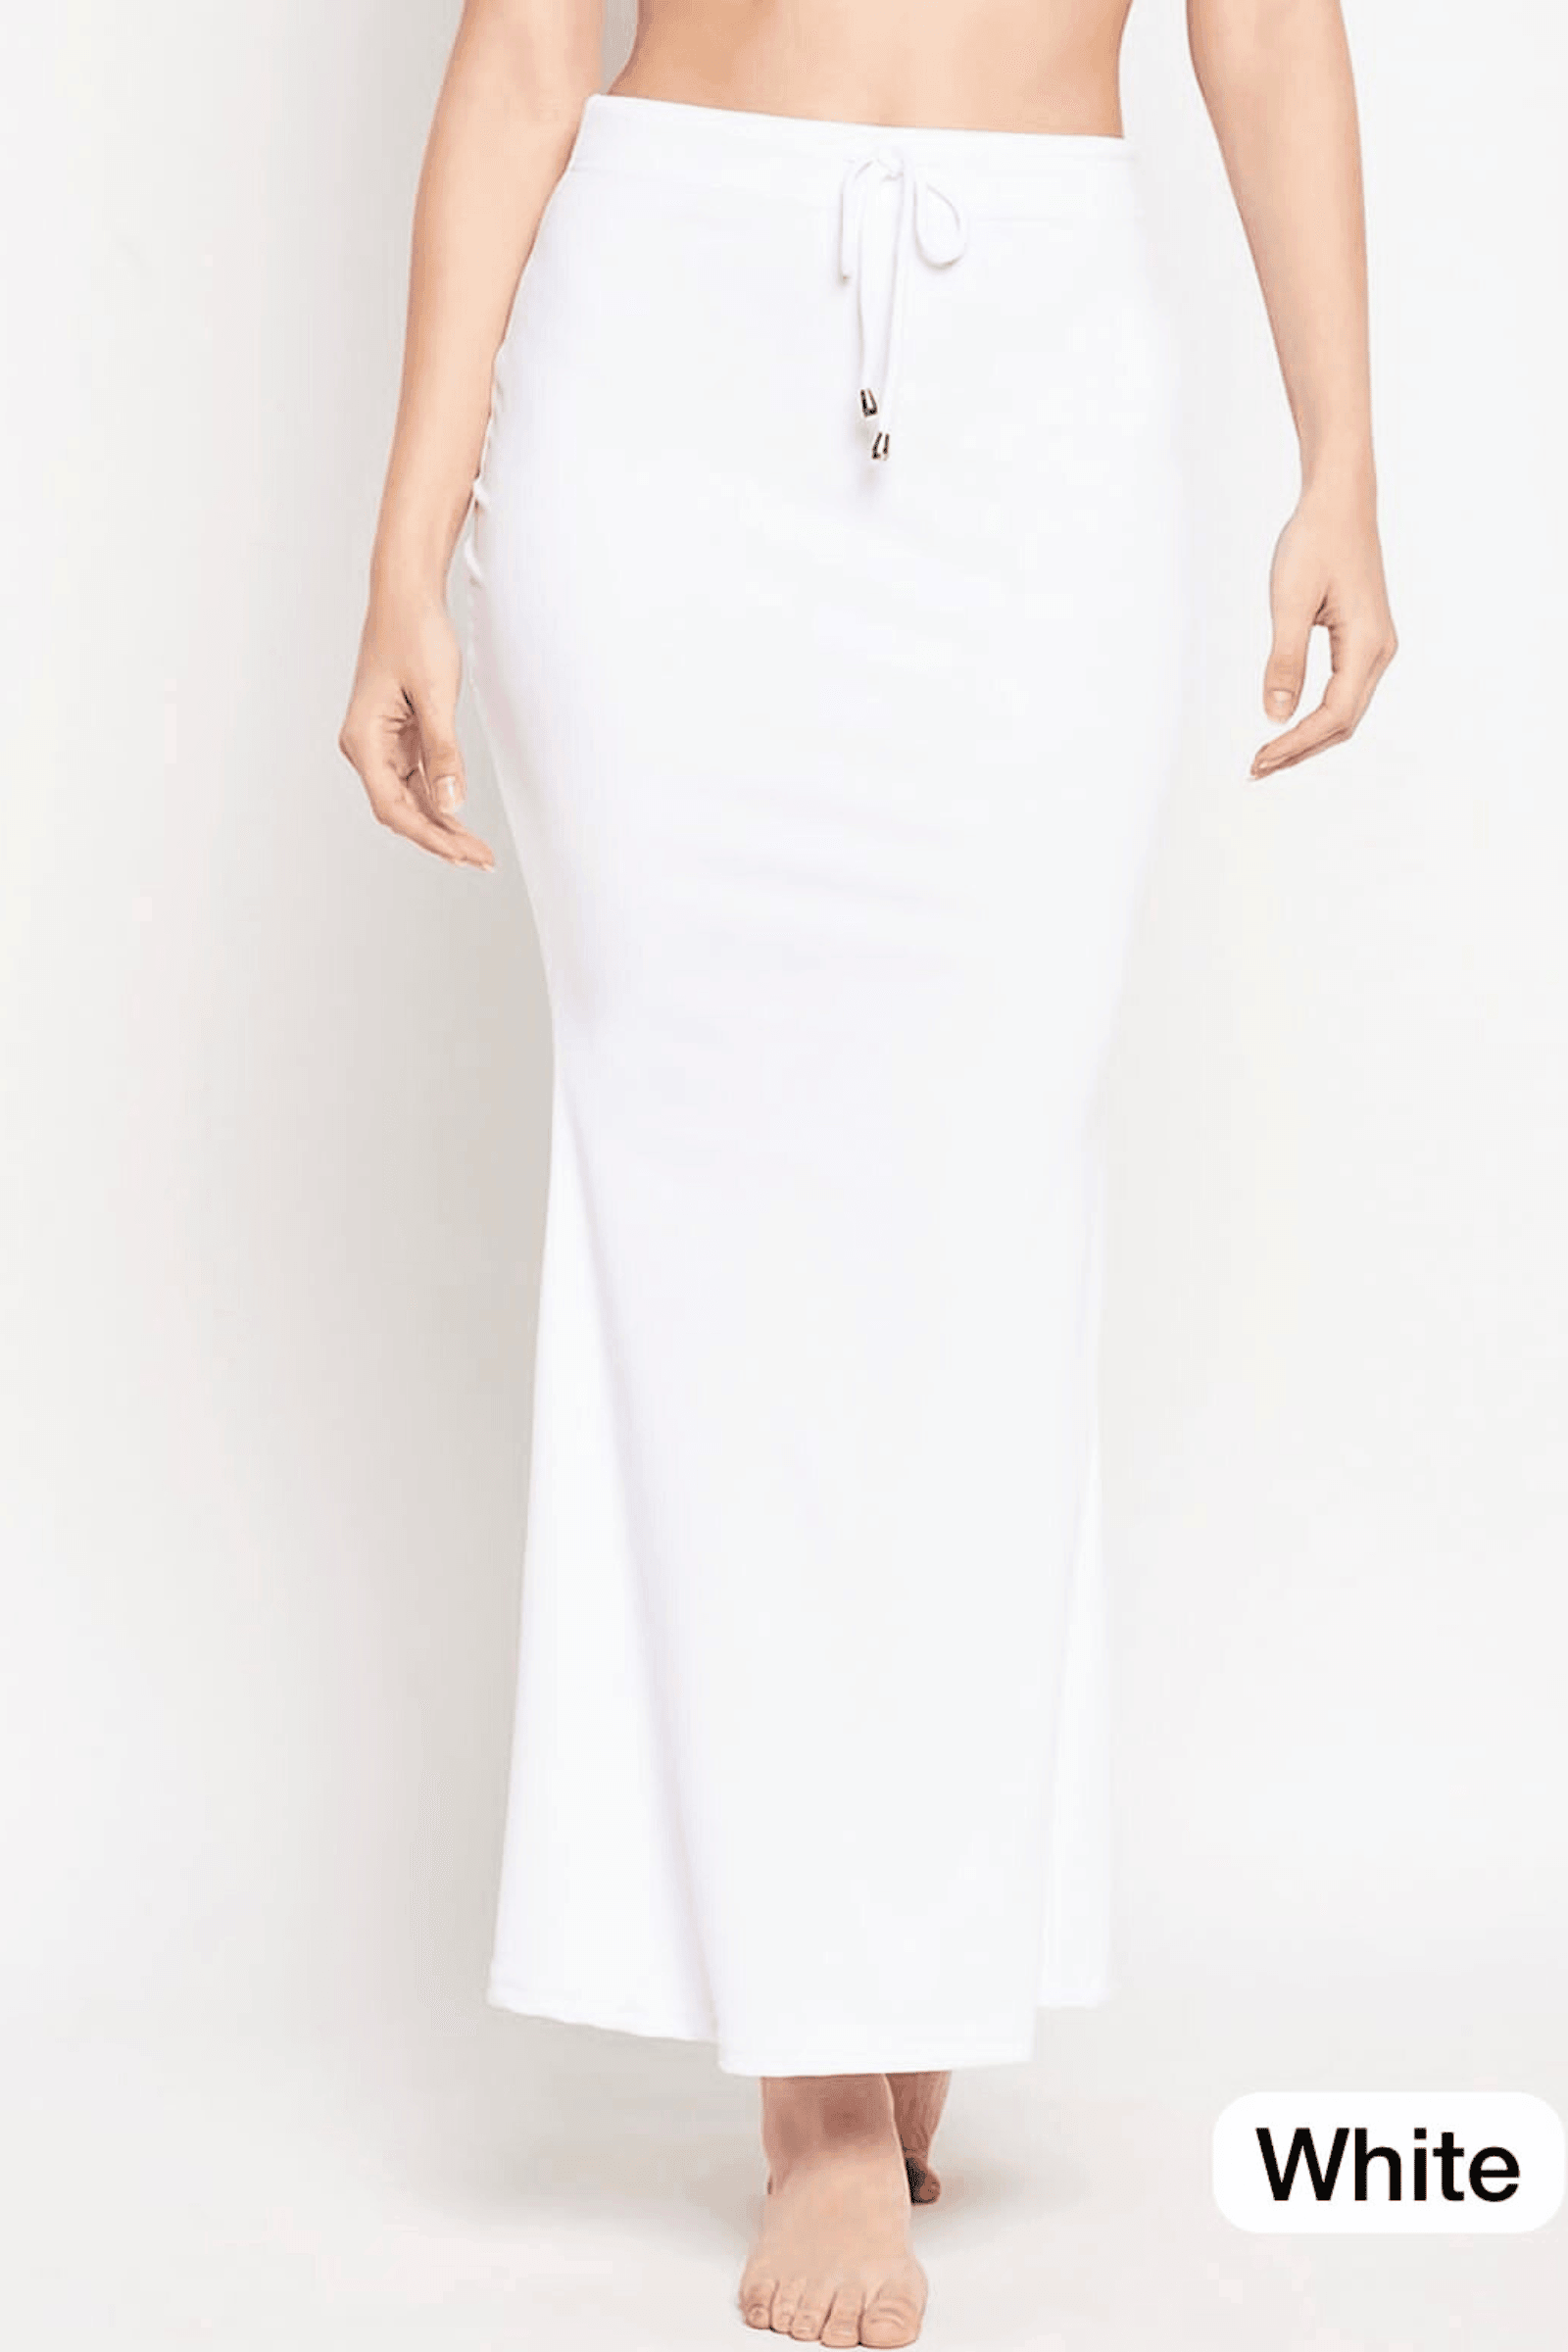 Glamwiz Slim Fit Saree Shapewear - White – Glamwiz India